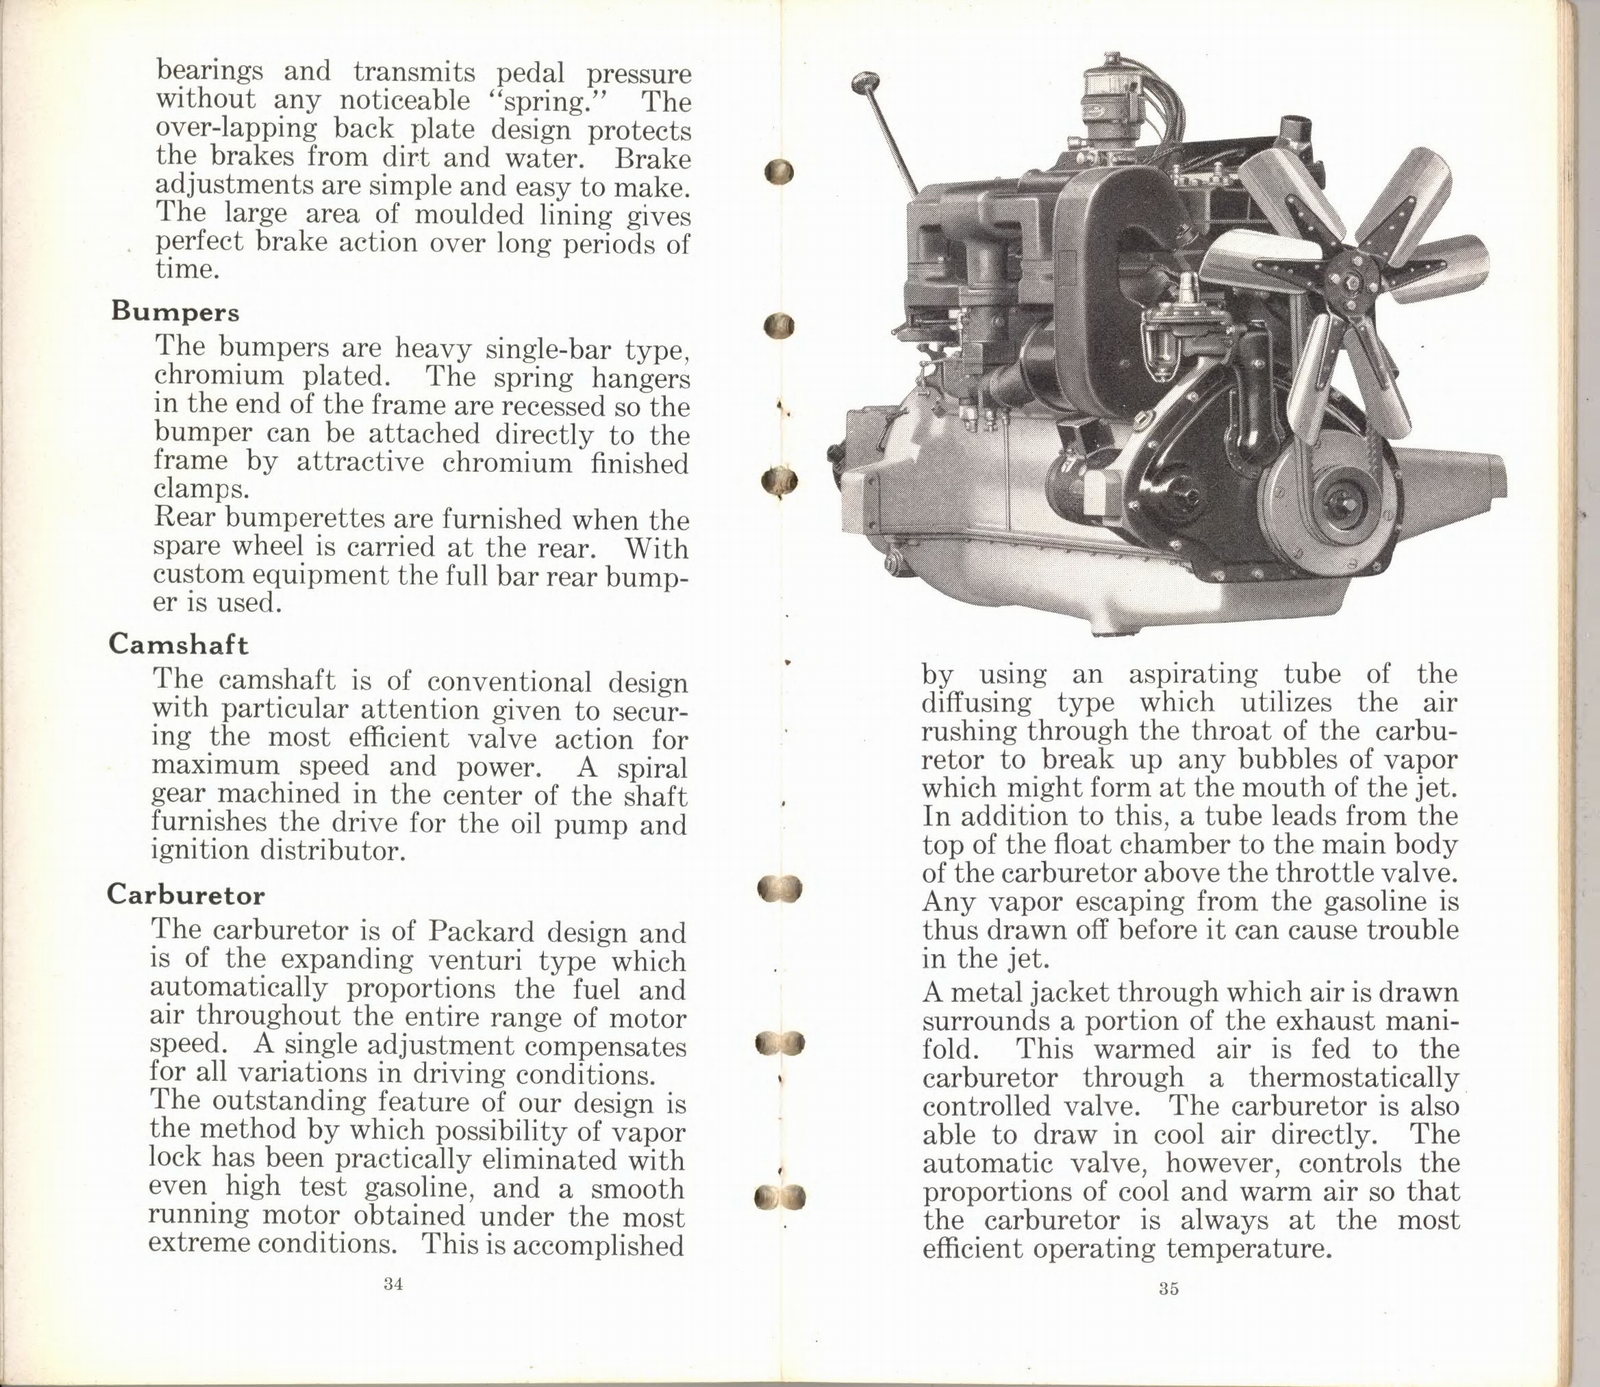 n_1932 Packard Light Eight Facts Book-34-35.jpg